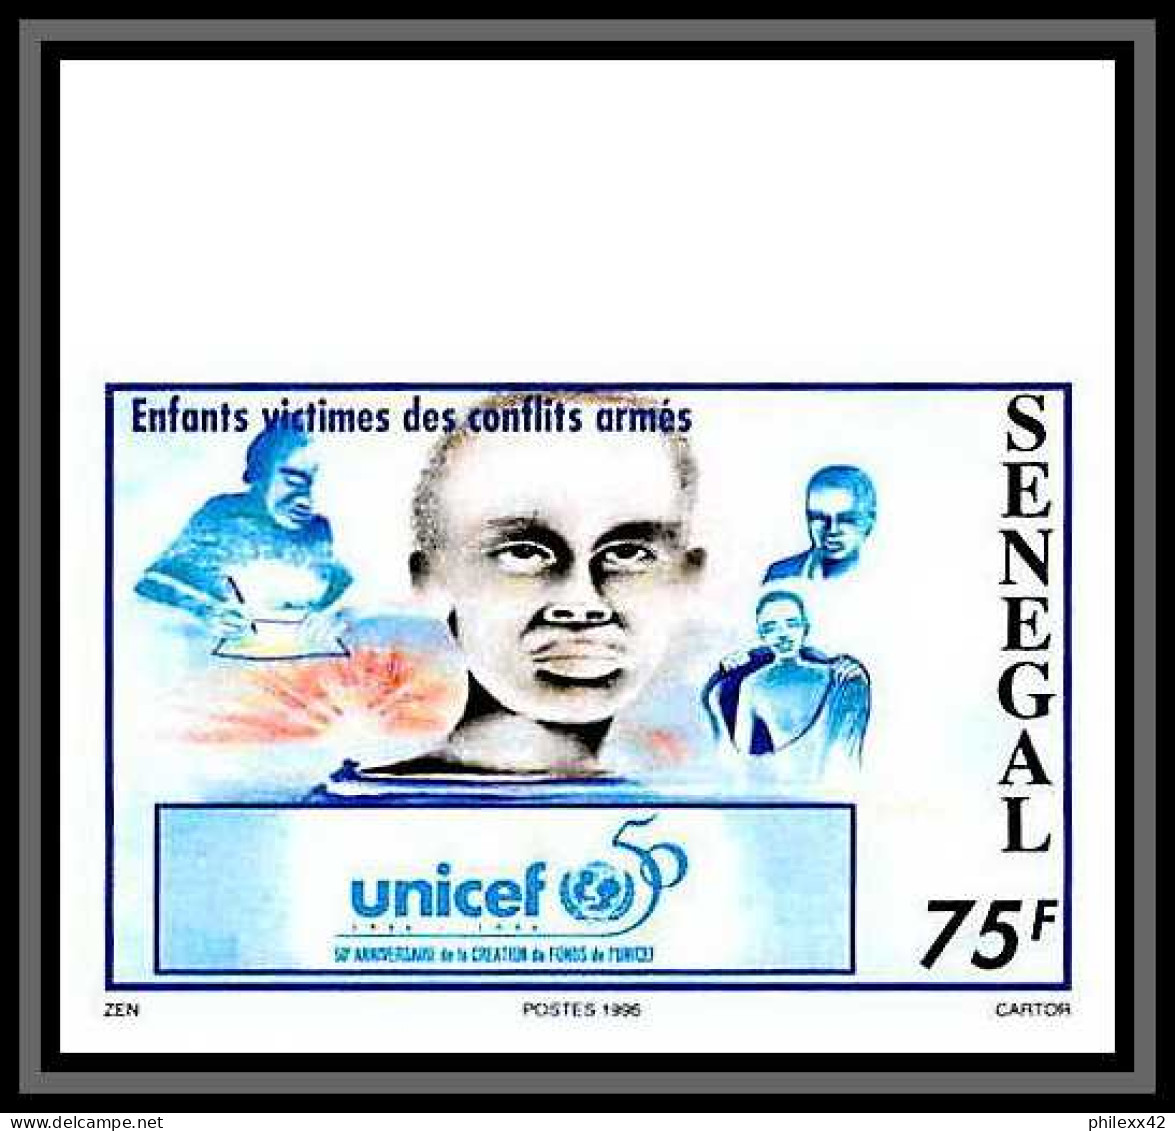 92742c Sénégal N°1191/1192 Unicef ONU UNO L'enfance Enfants Children Child 1996 Non Dentelé ** MNH - UNICEF